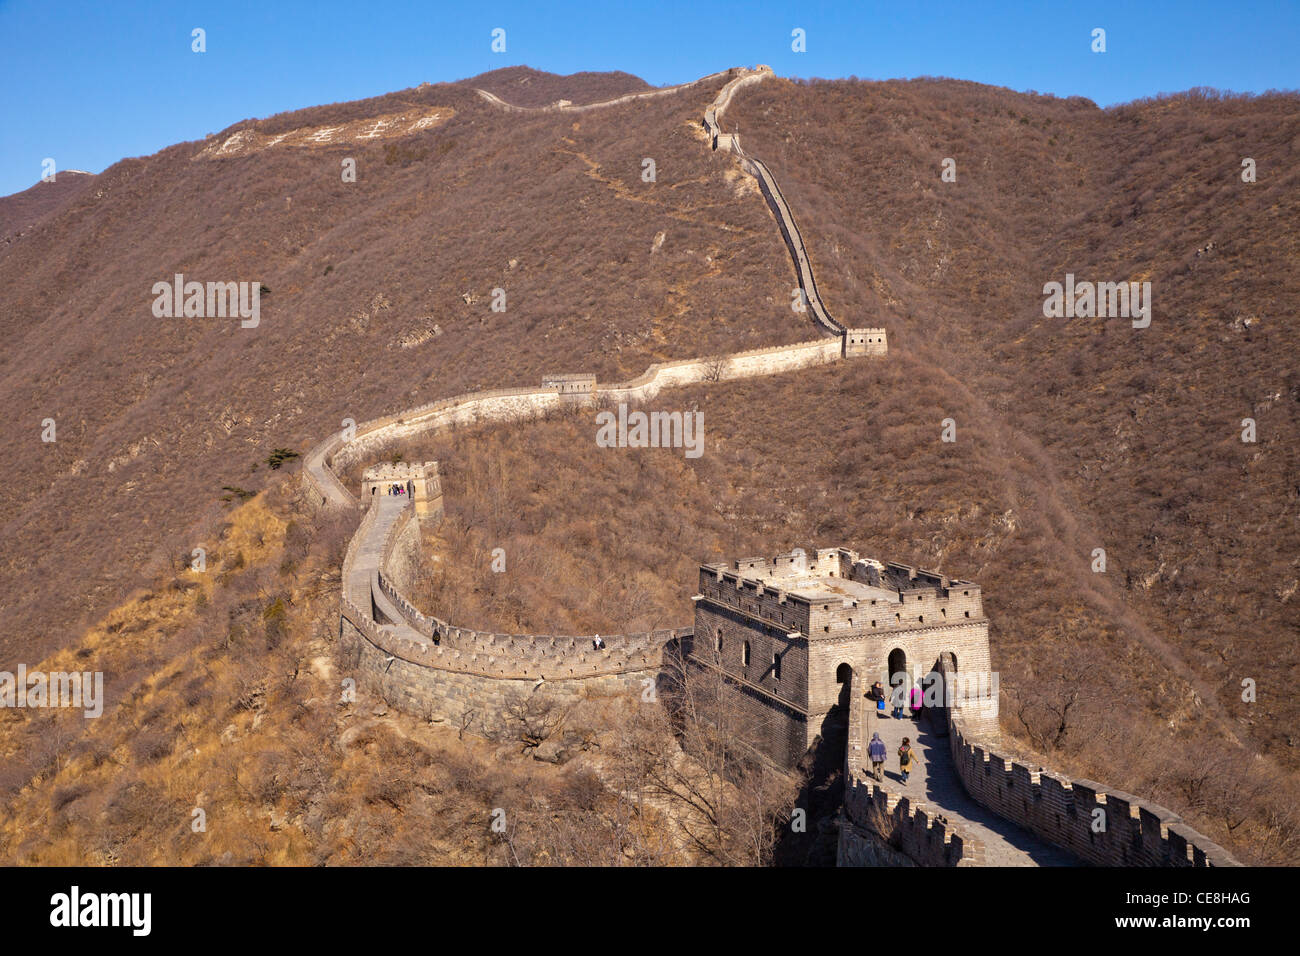 La sección restaurada de la Gran Muralla de China en Mutianyu, cerca de Beijing, adoptada a finales de invierno. Foto de stock